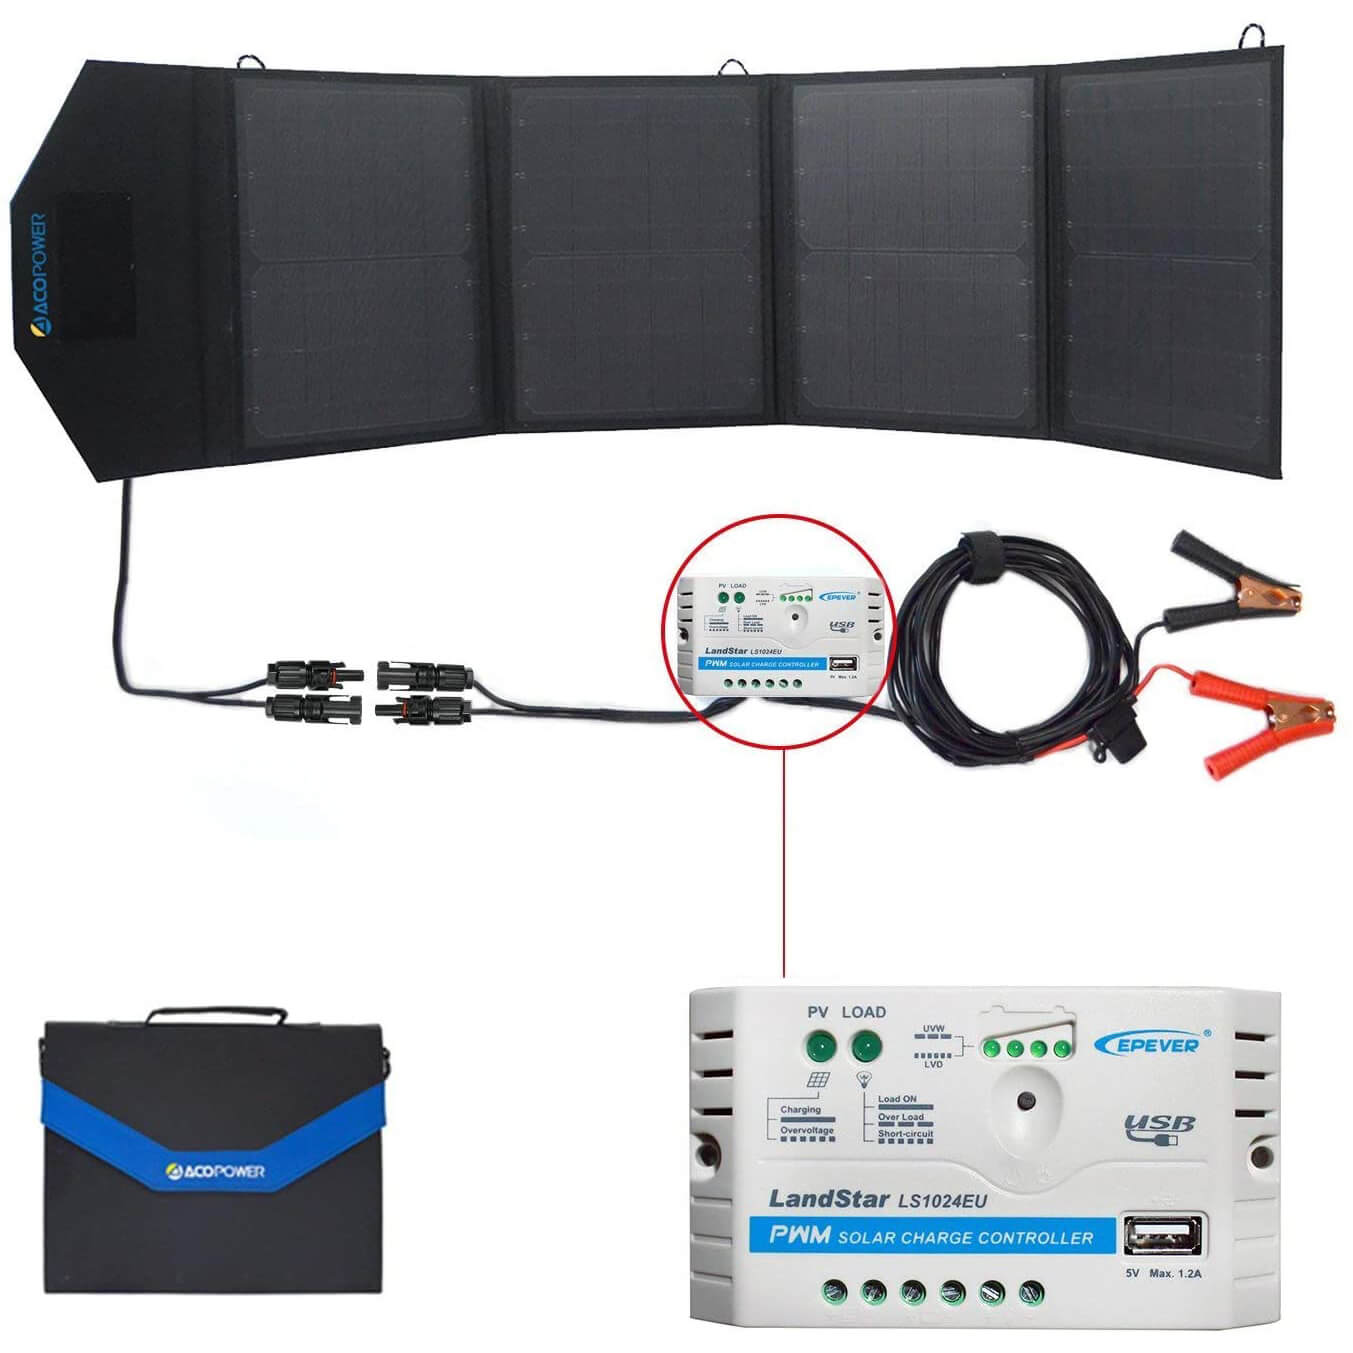 ACOPOWER Solar Panel Kit